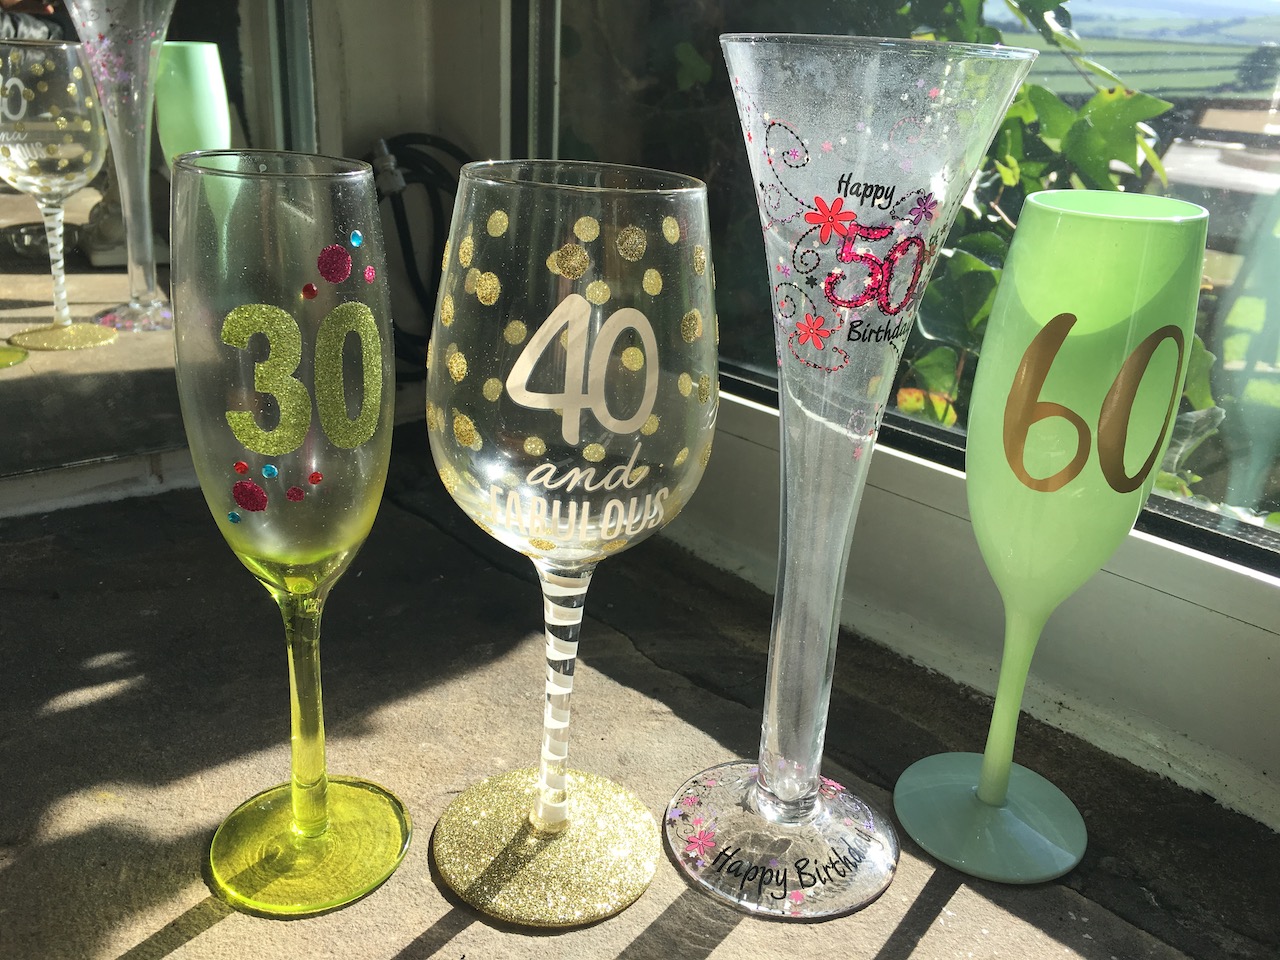 Birthday celebration glasses